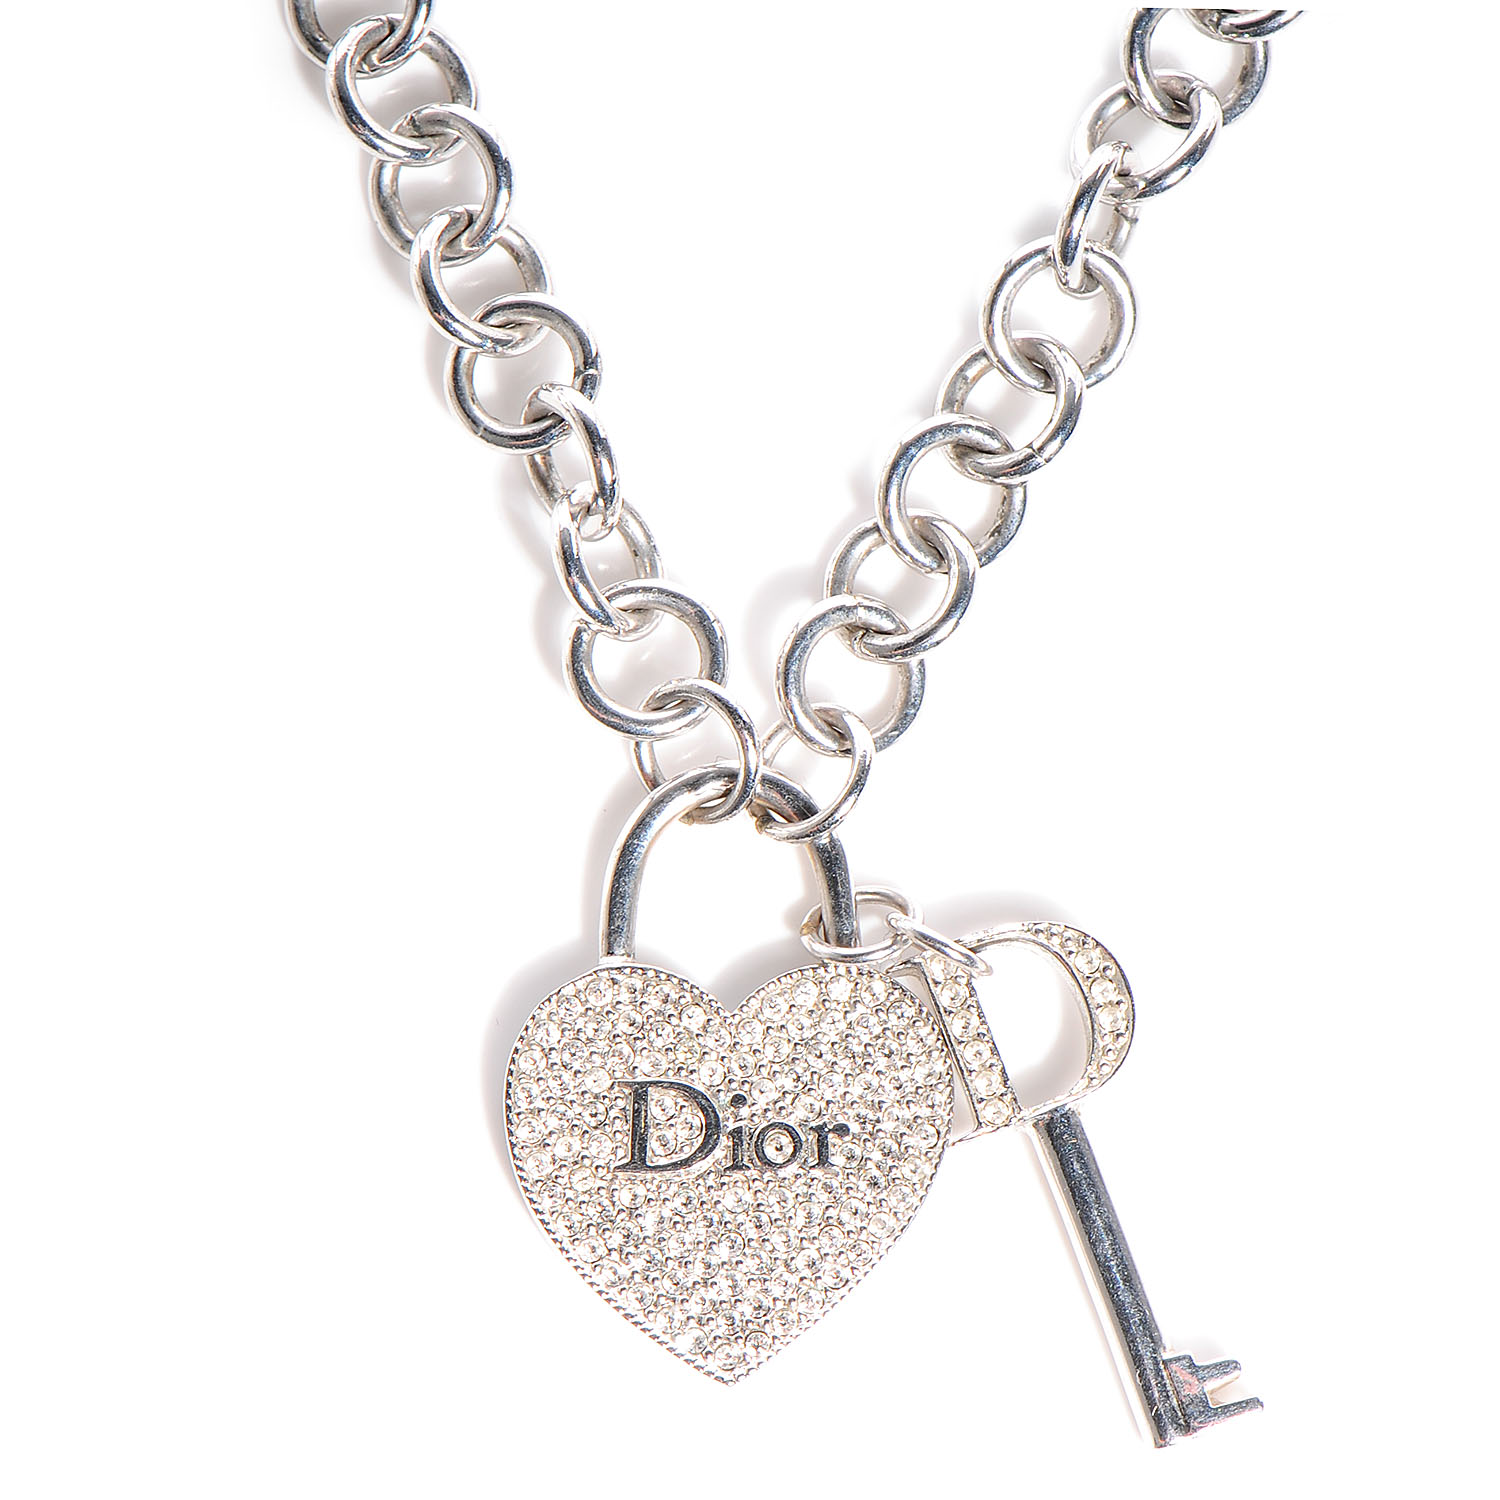 dior key necklace